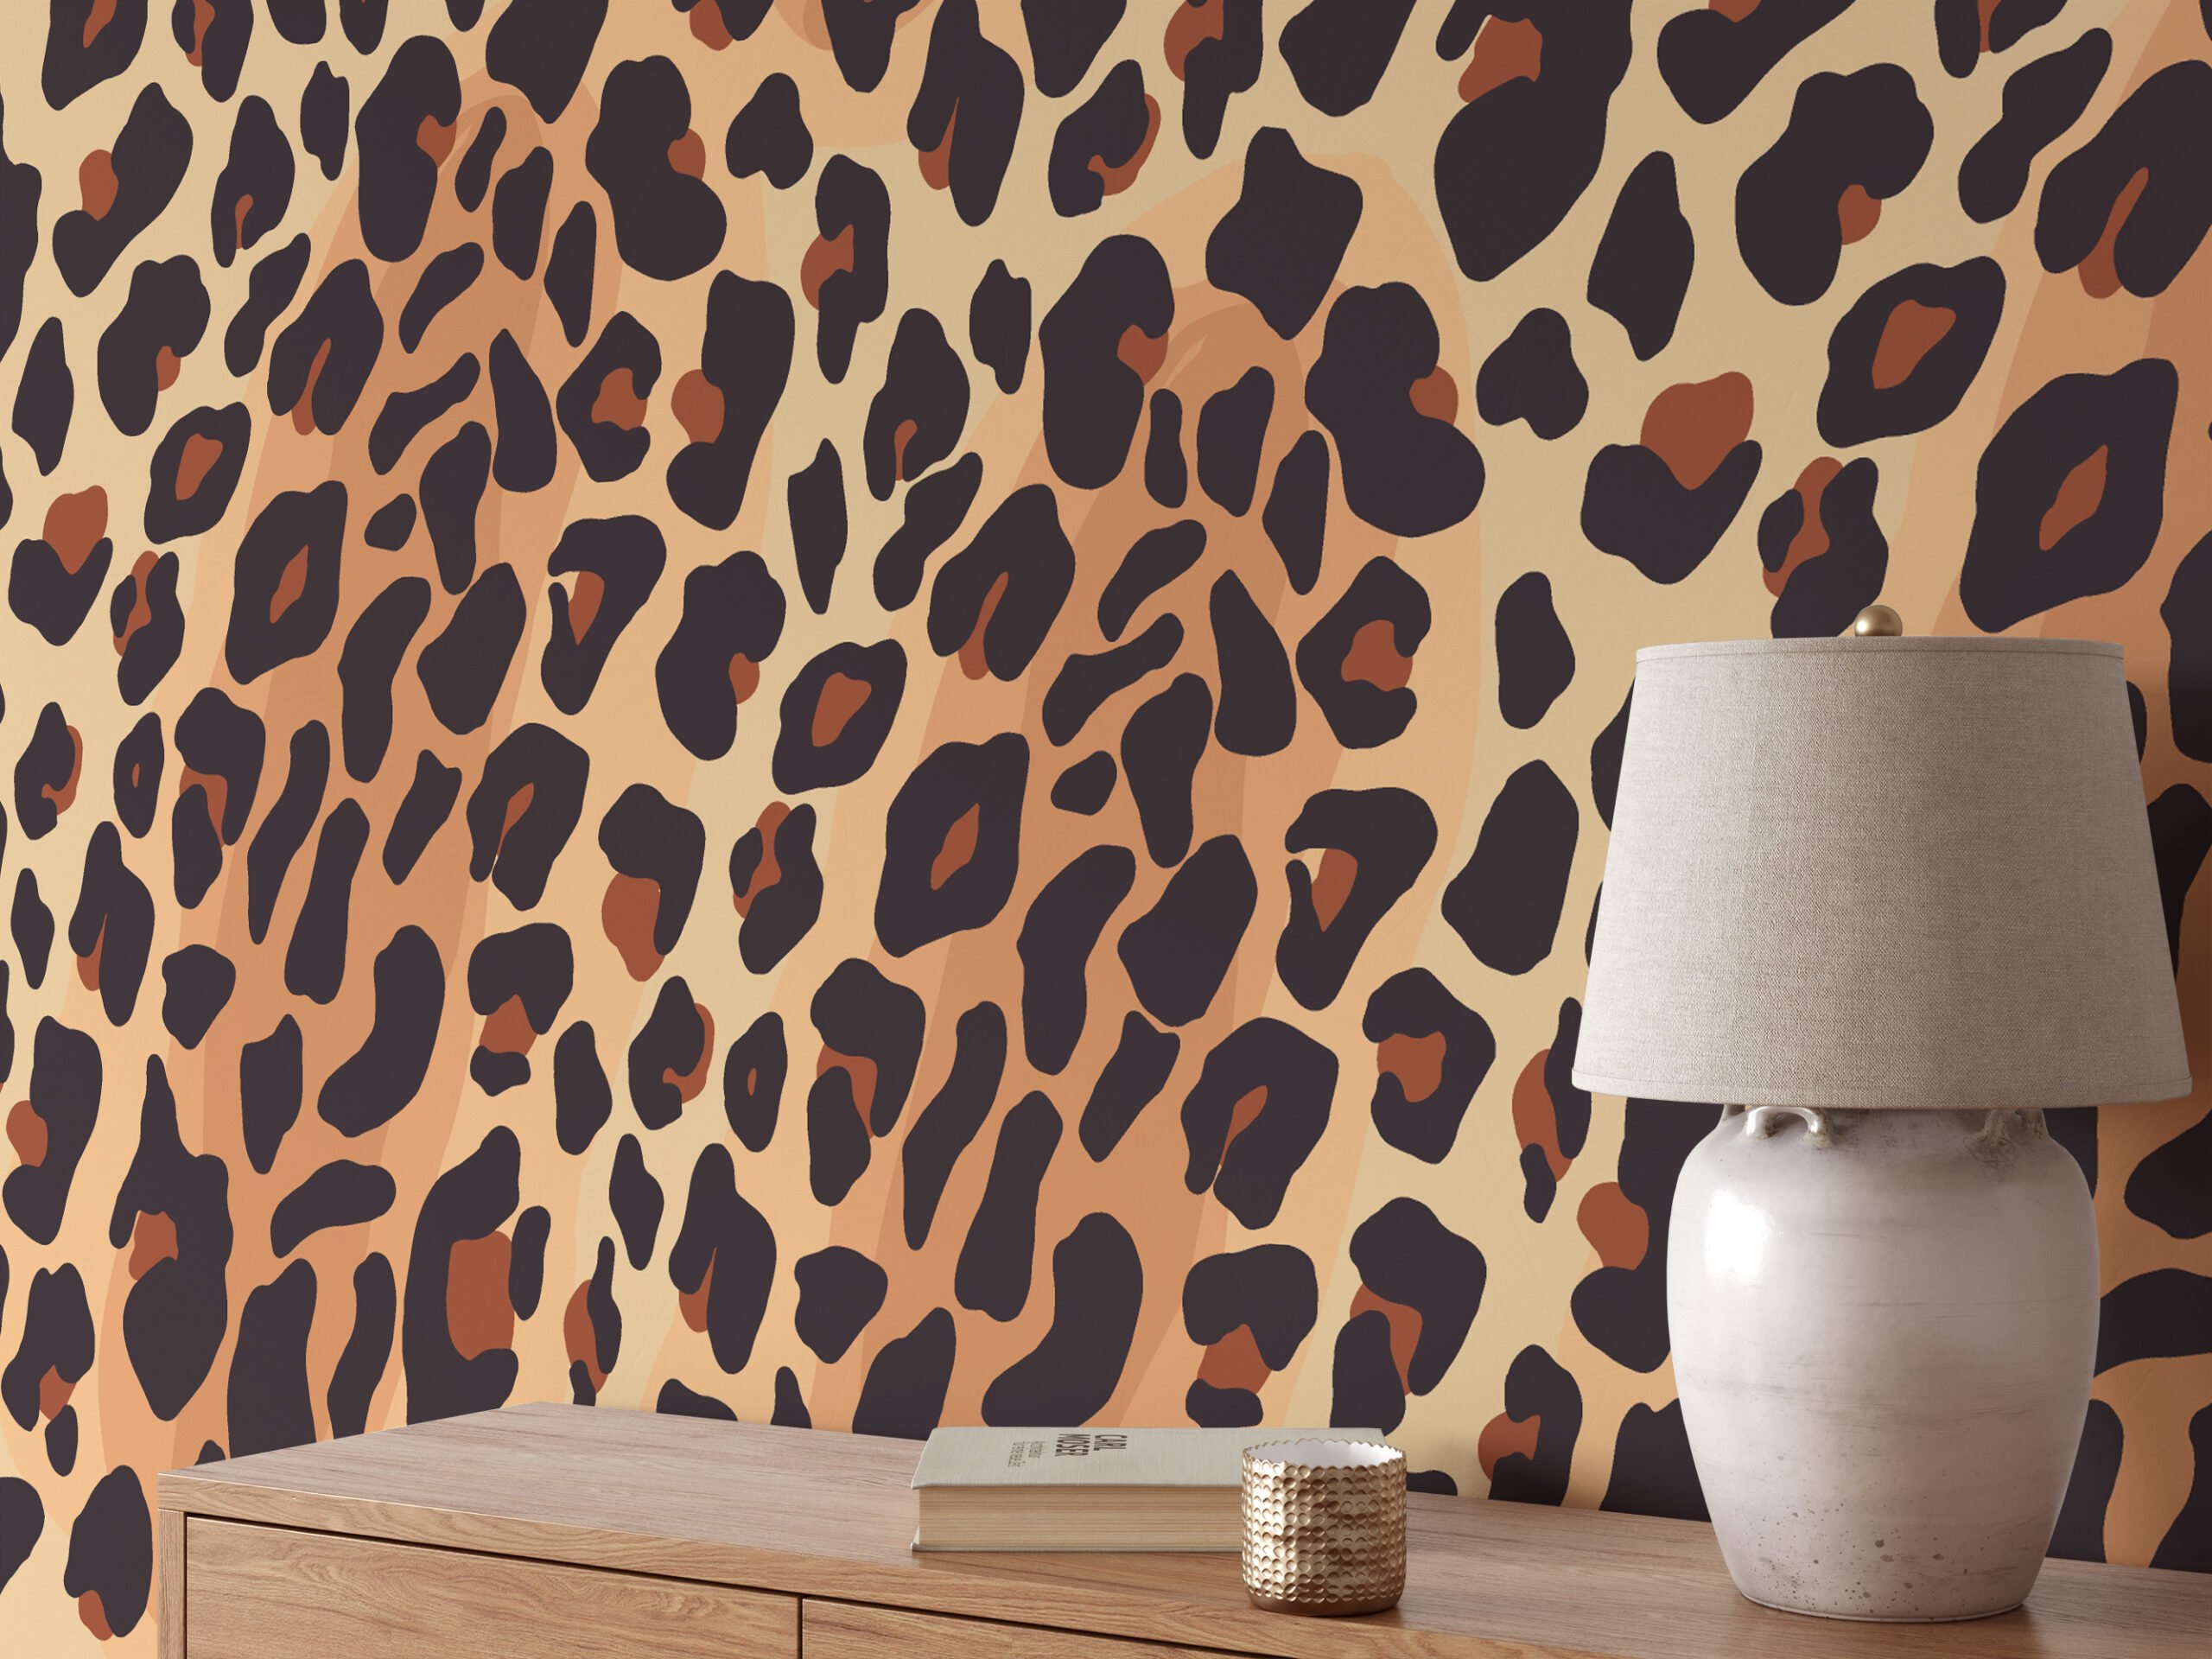 Leopard Print Animal Fur Wall Murals